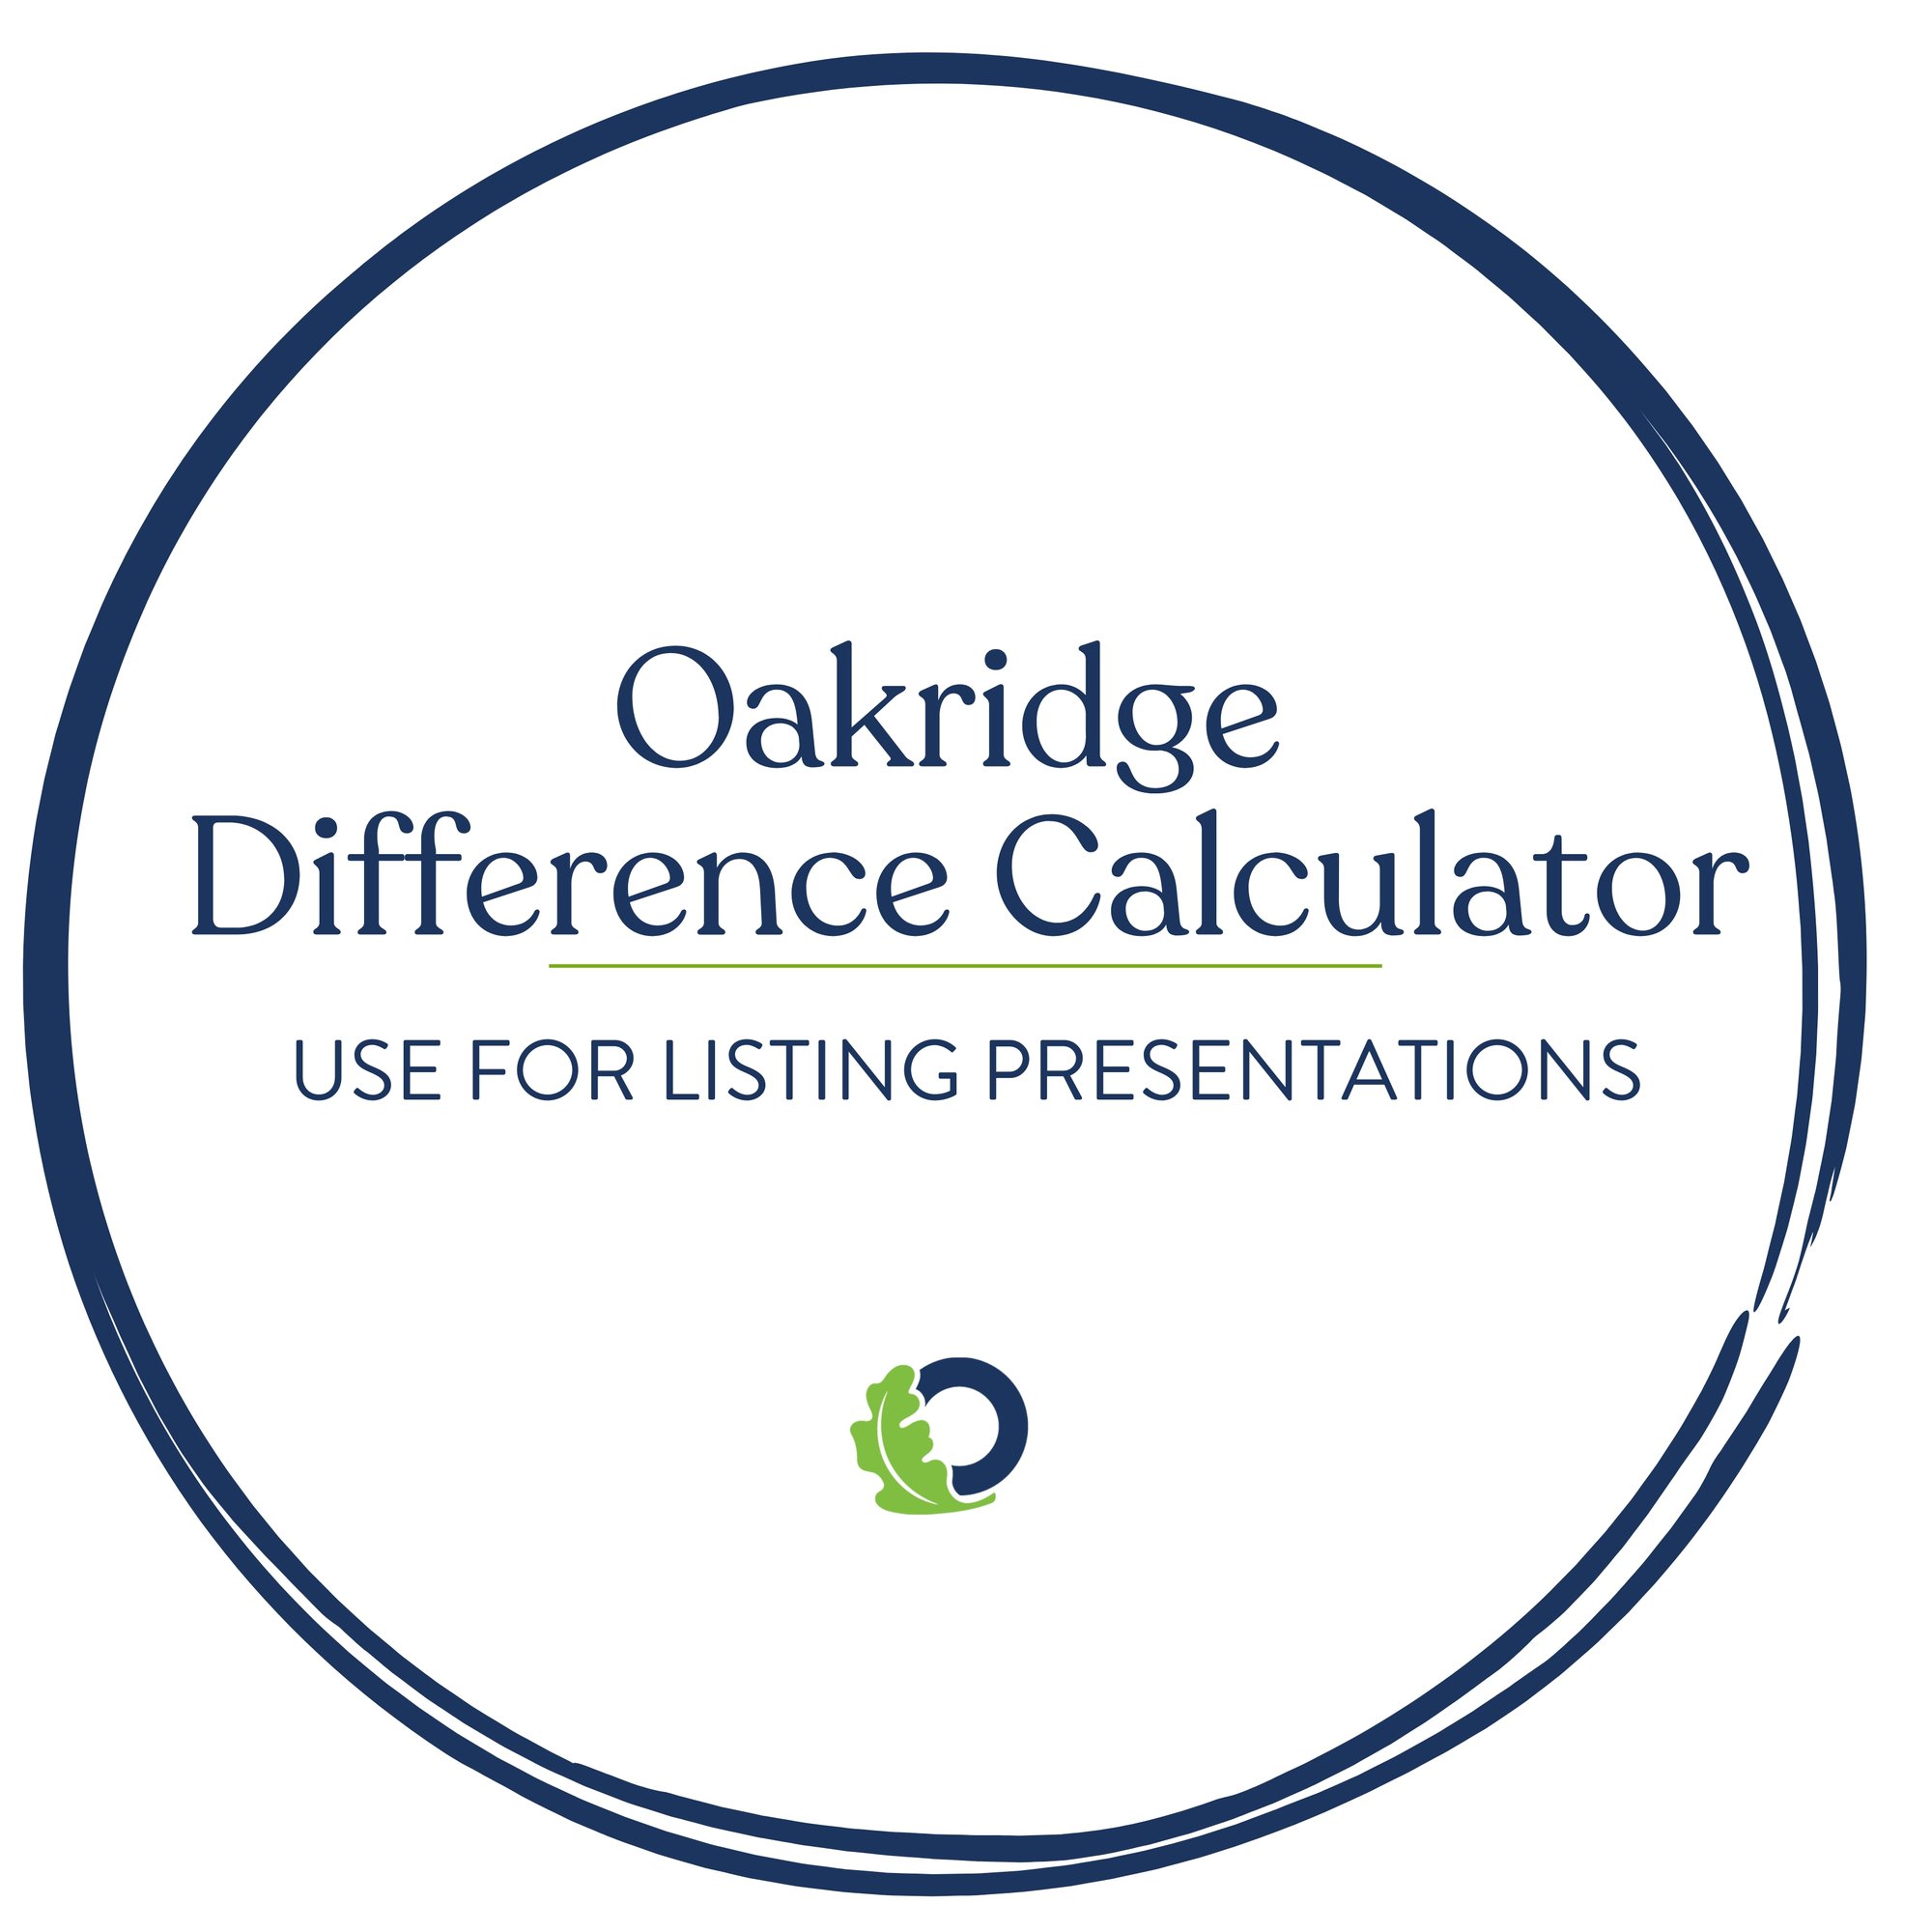 The Oakridge Difference Calculator